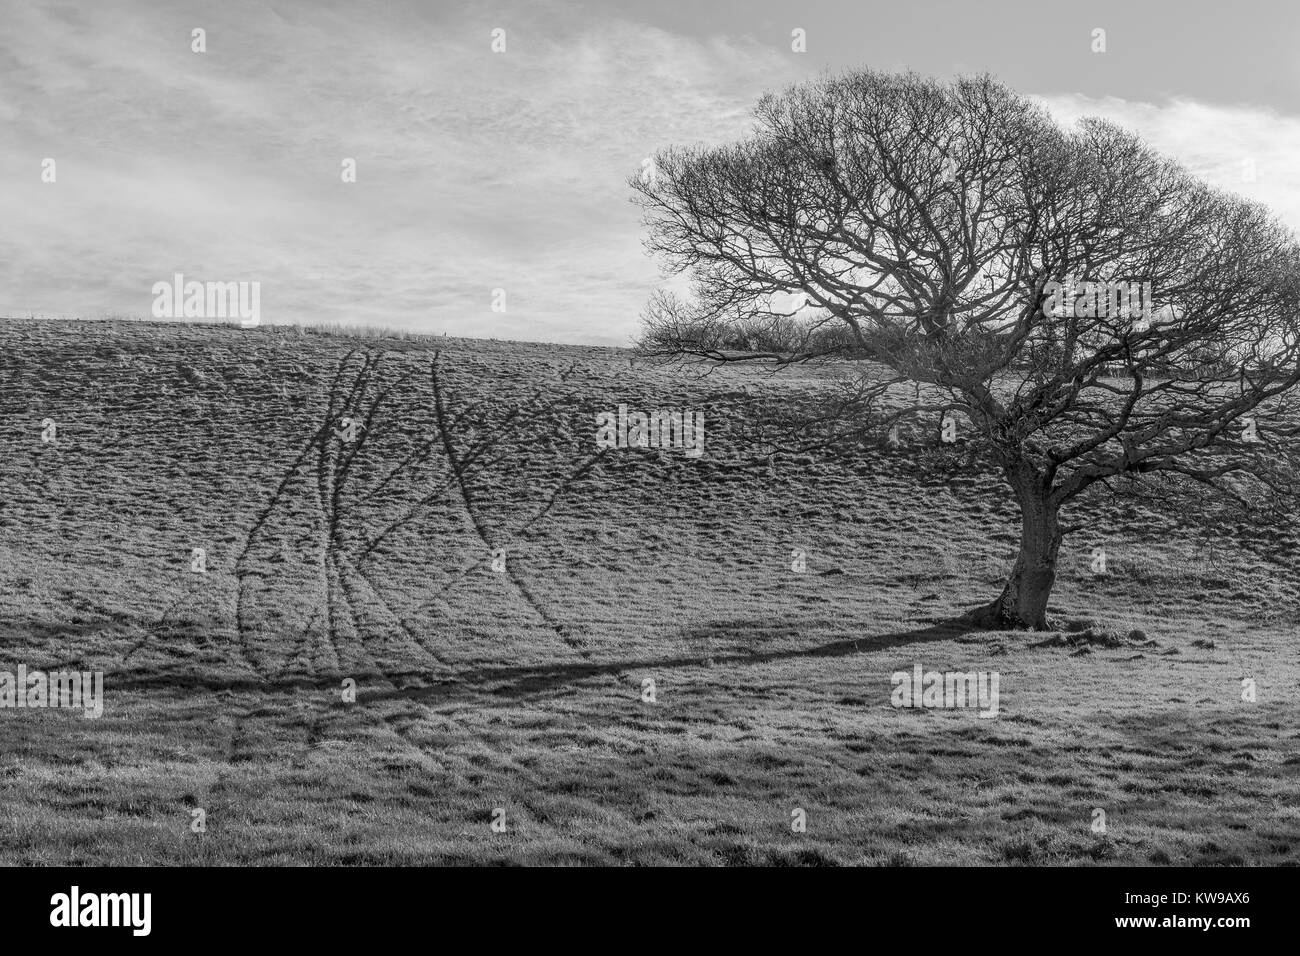 Immagine in bianco e nero (Conversione da colore) di un isolato di Oak tree in un campo e i segni delle tracce degli animali in erba - con copia spazio. Foto Stock